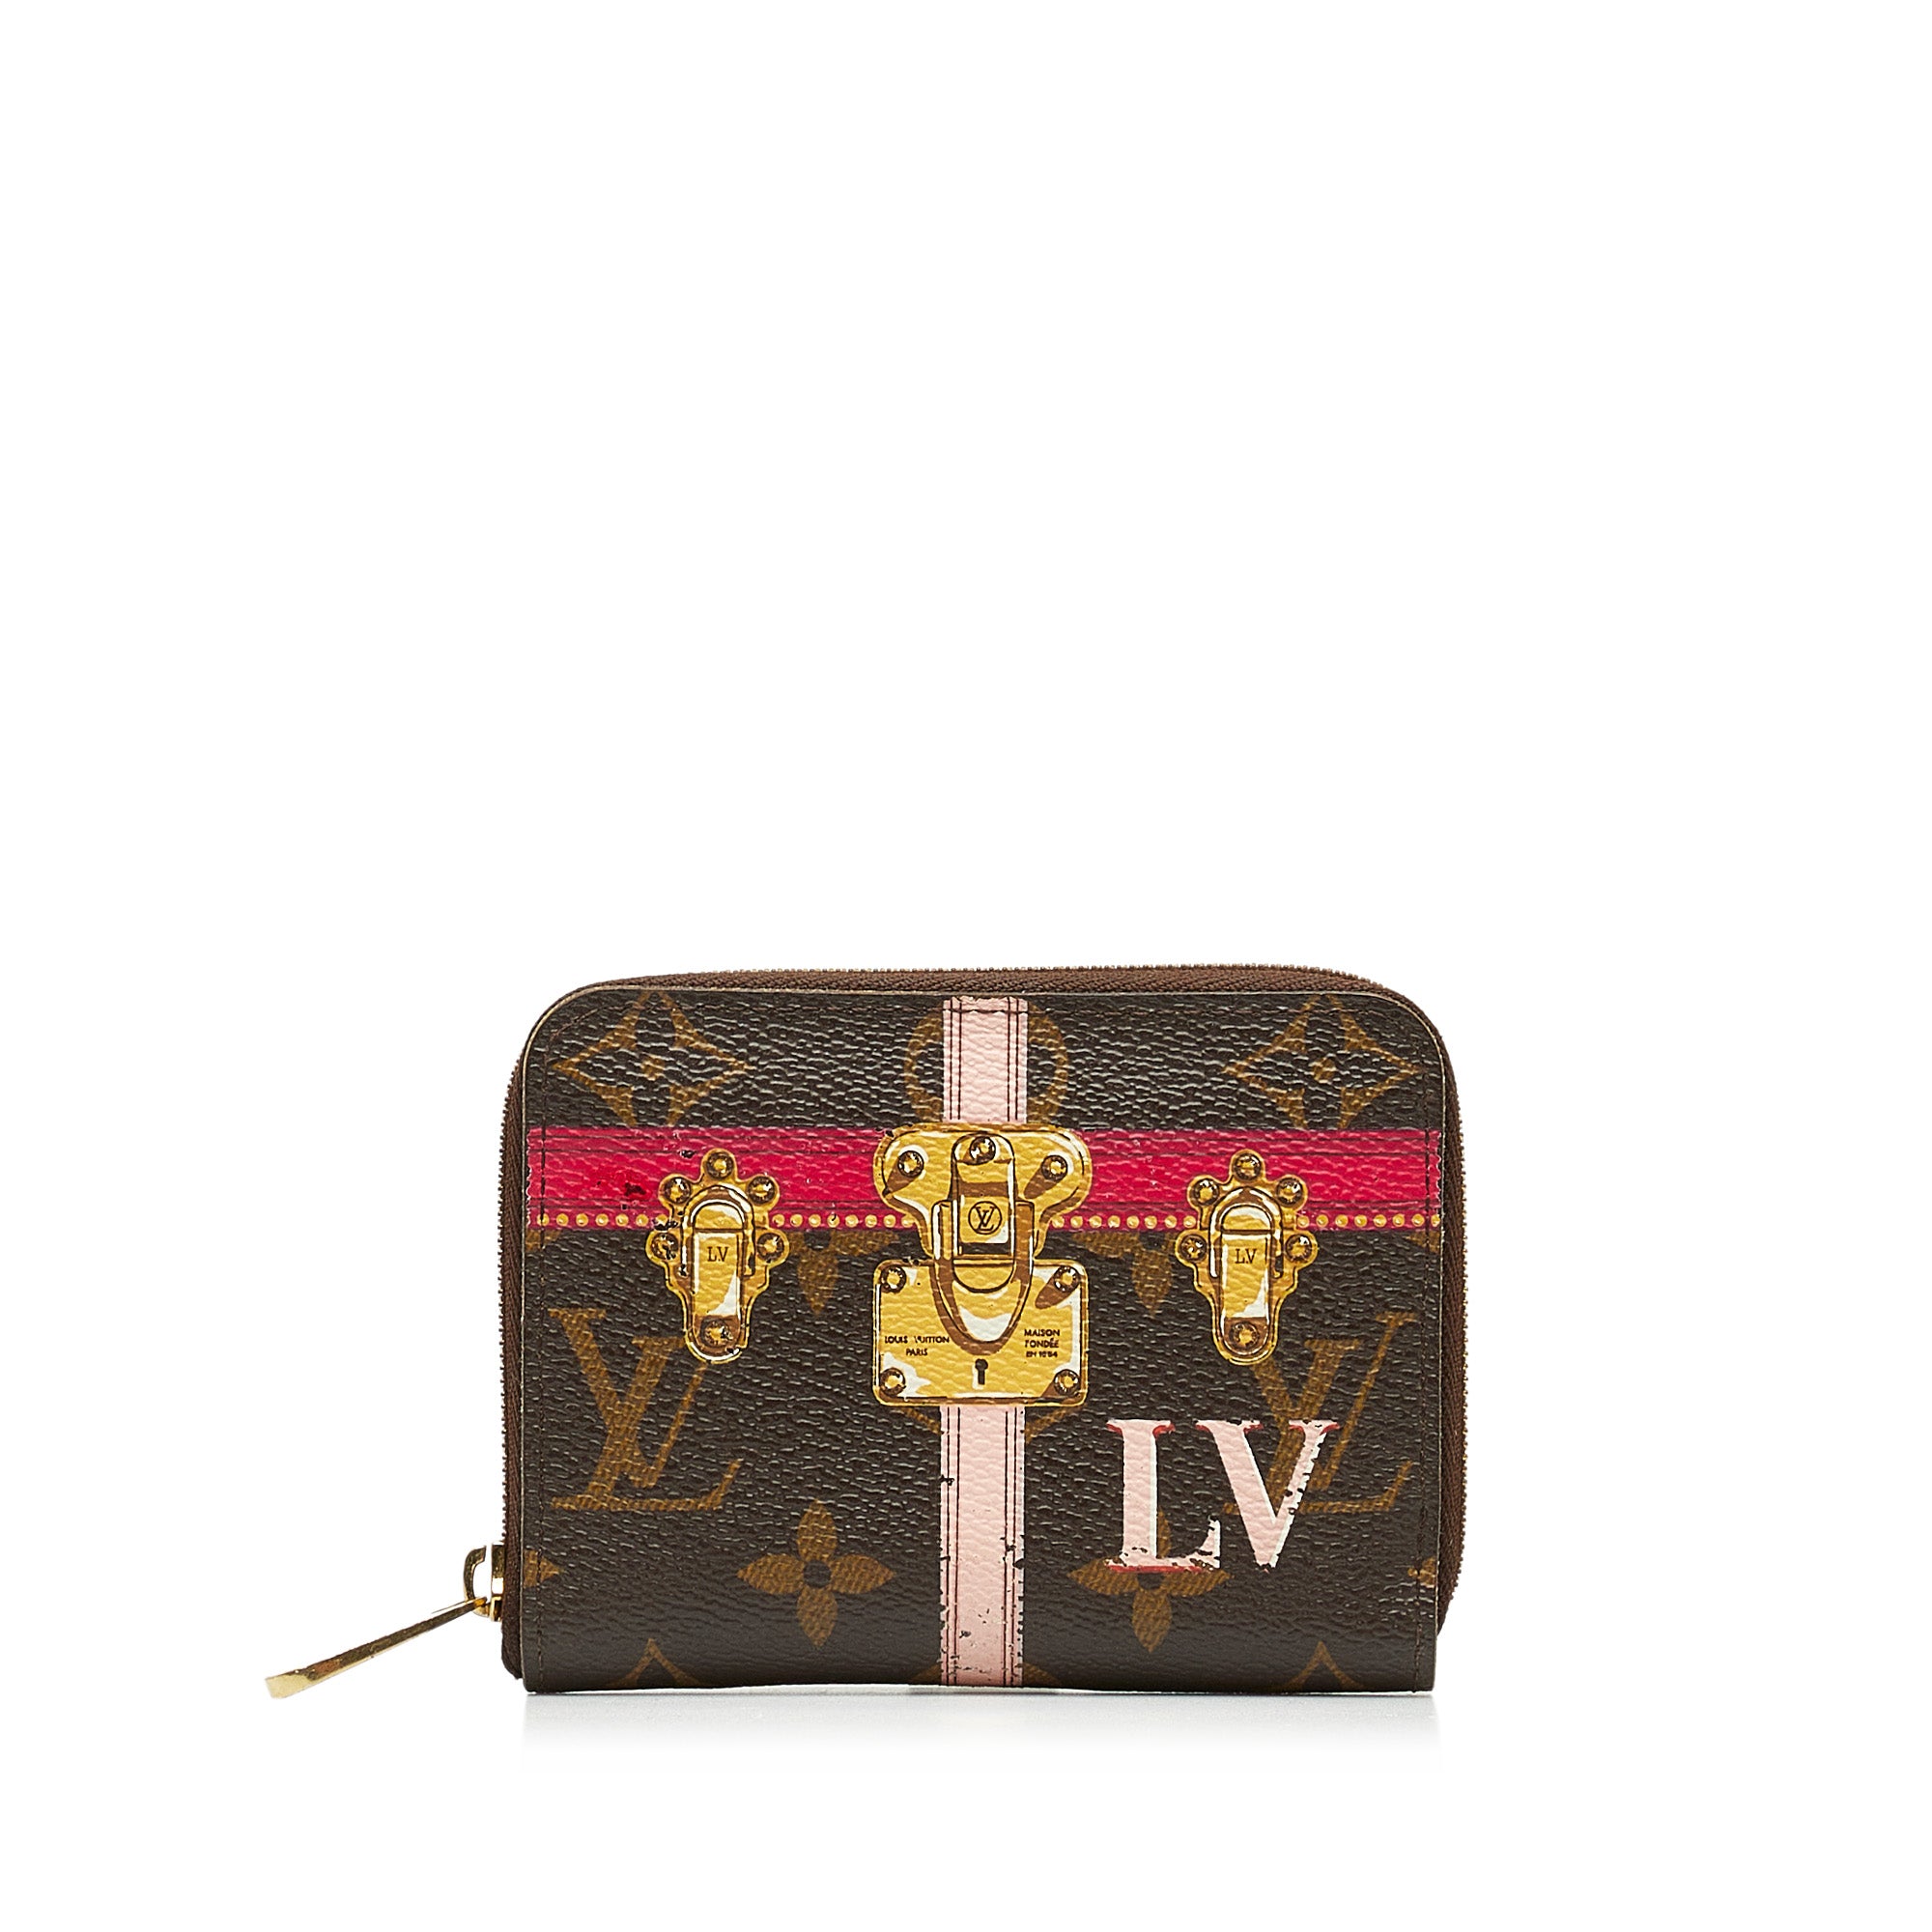 A Guide To Purchasing Your First Louis Vuitton Handbag – Sheena D